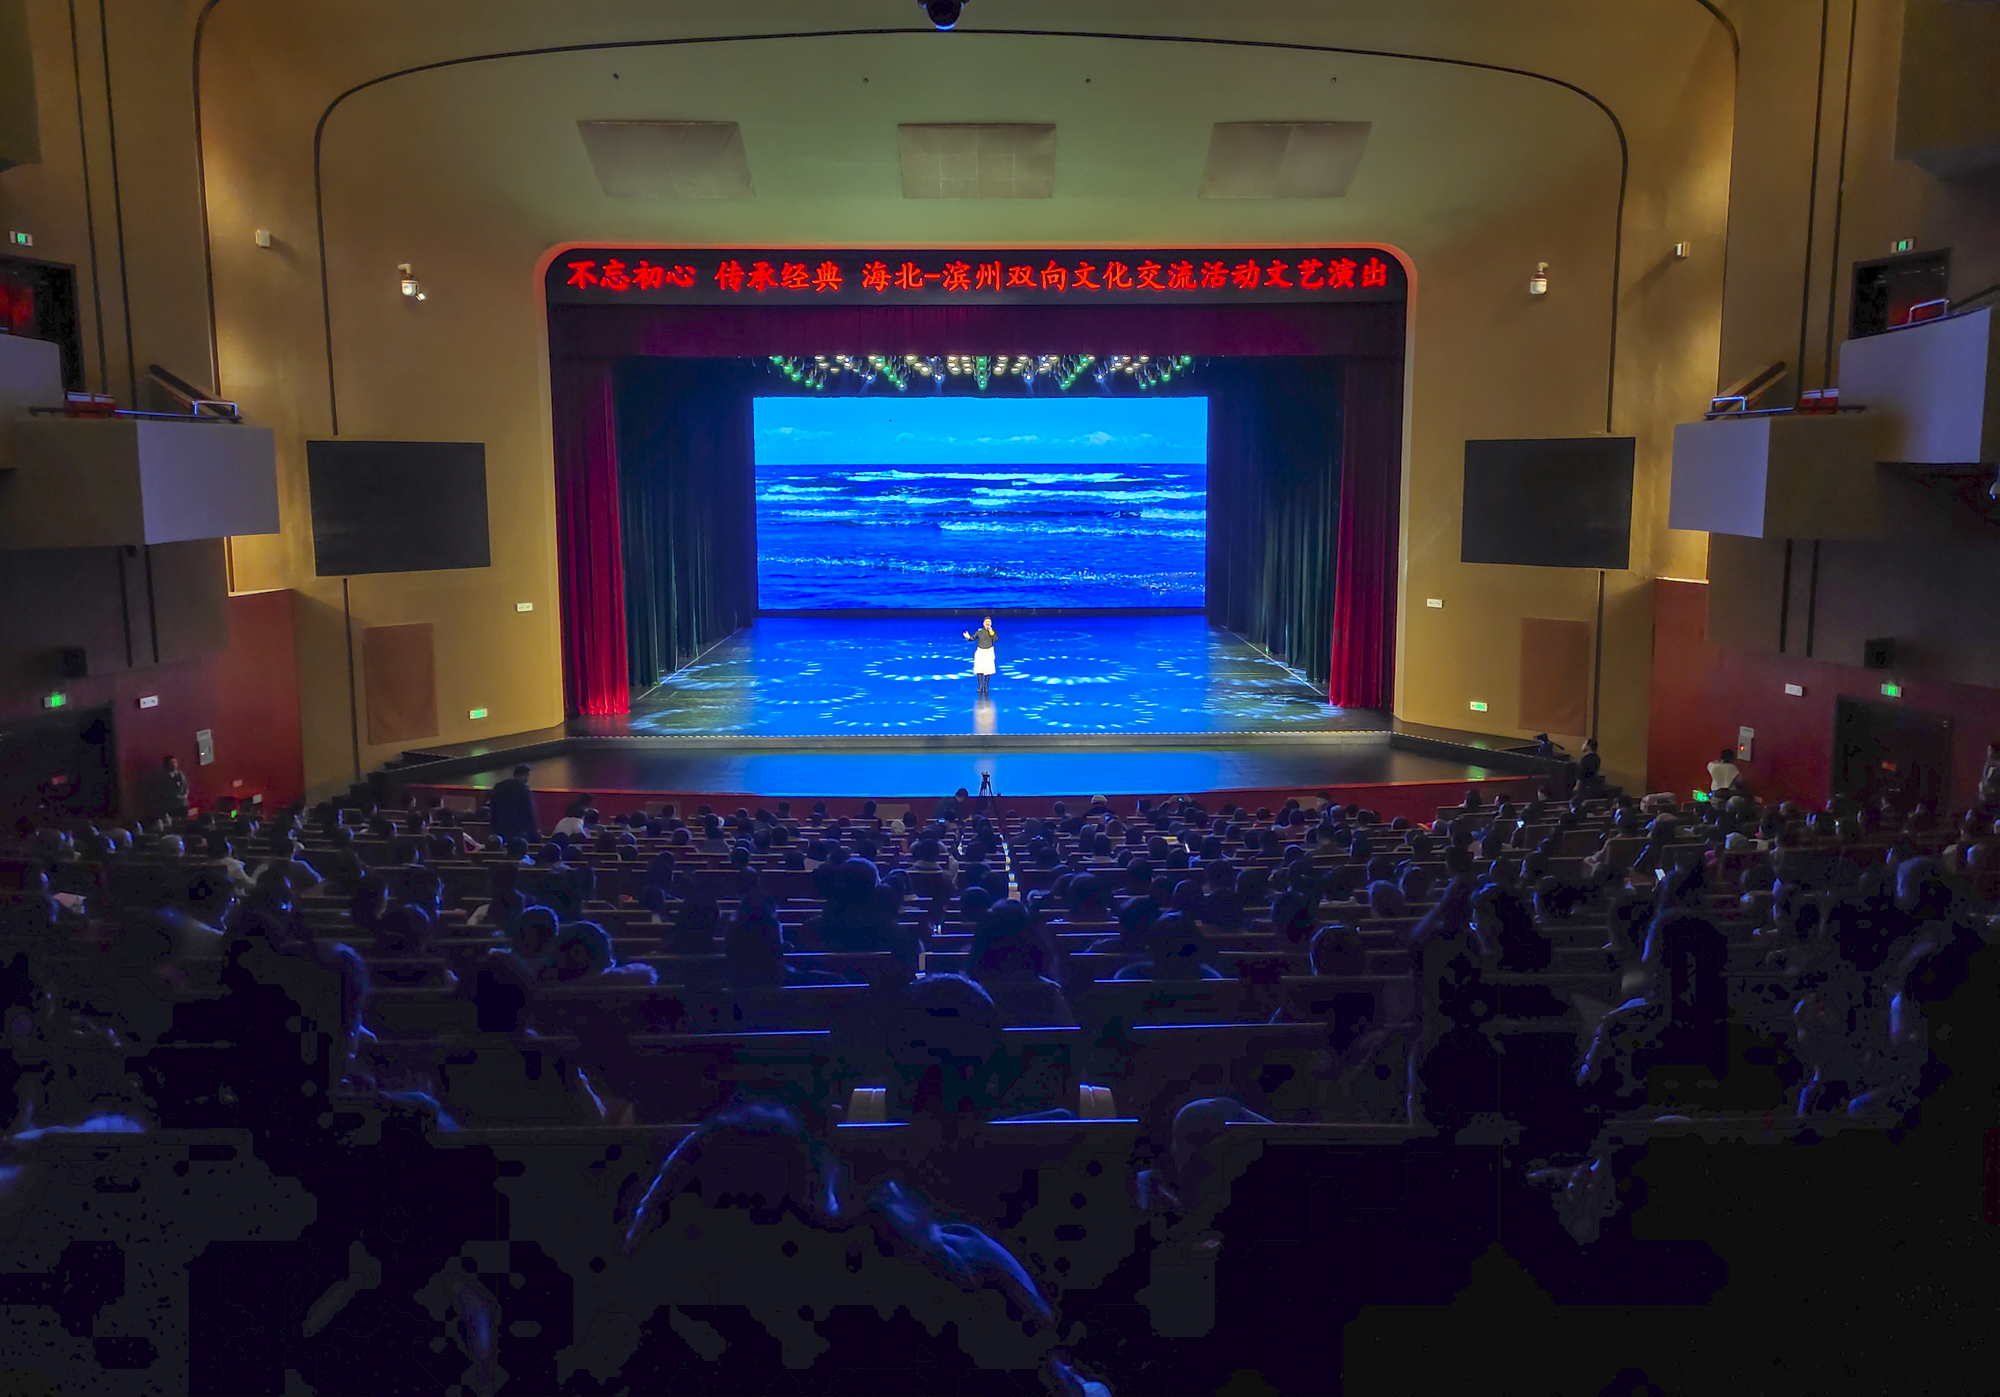 海北州非物质文化遗产舞台展演活动在滨州保利大剧院成功举办 